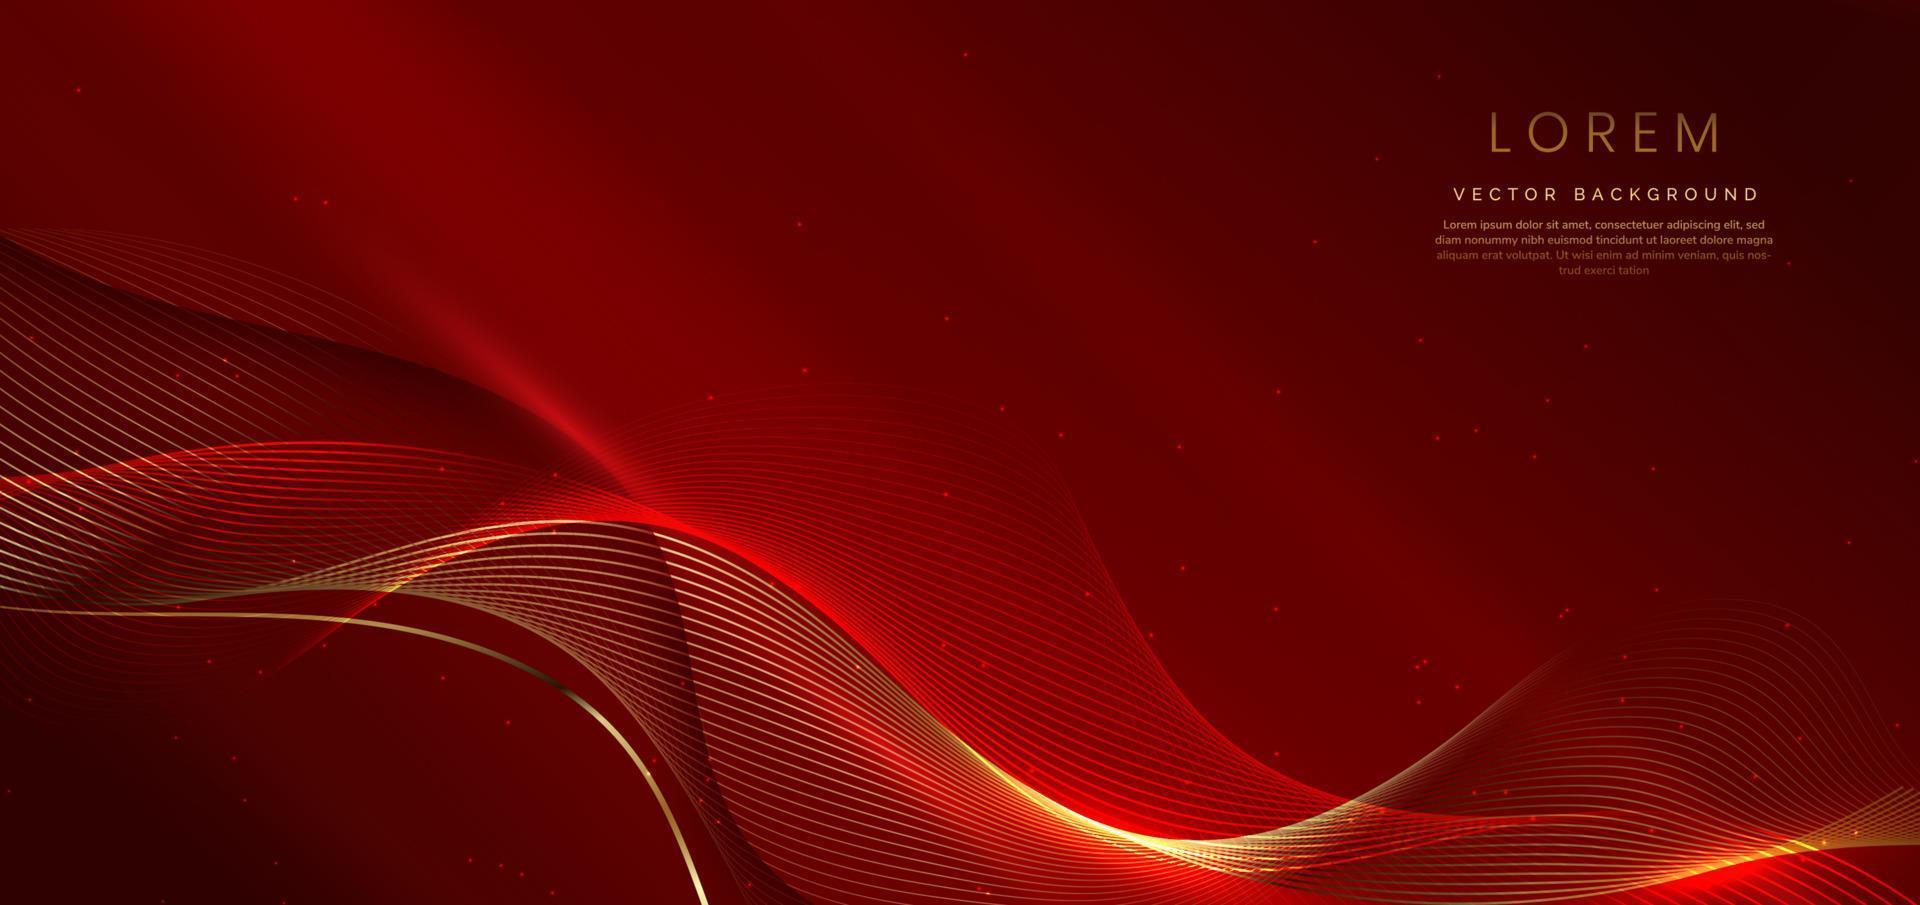 línea de onda 3d abstracta de oro y rojo sobre fondo rojo con efecto de iluminación y brillo con espacio de copia para texto. vector